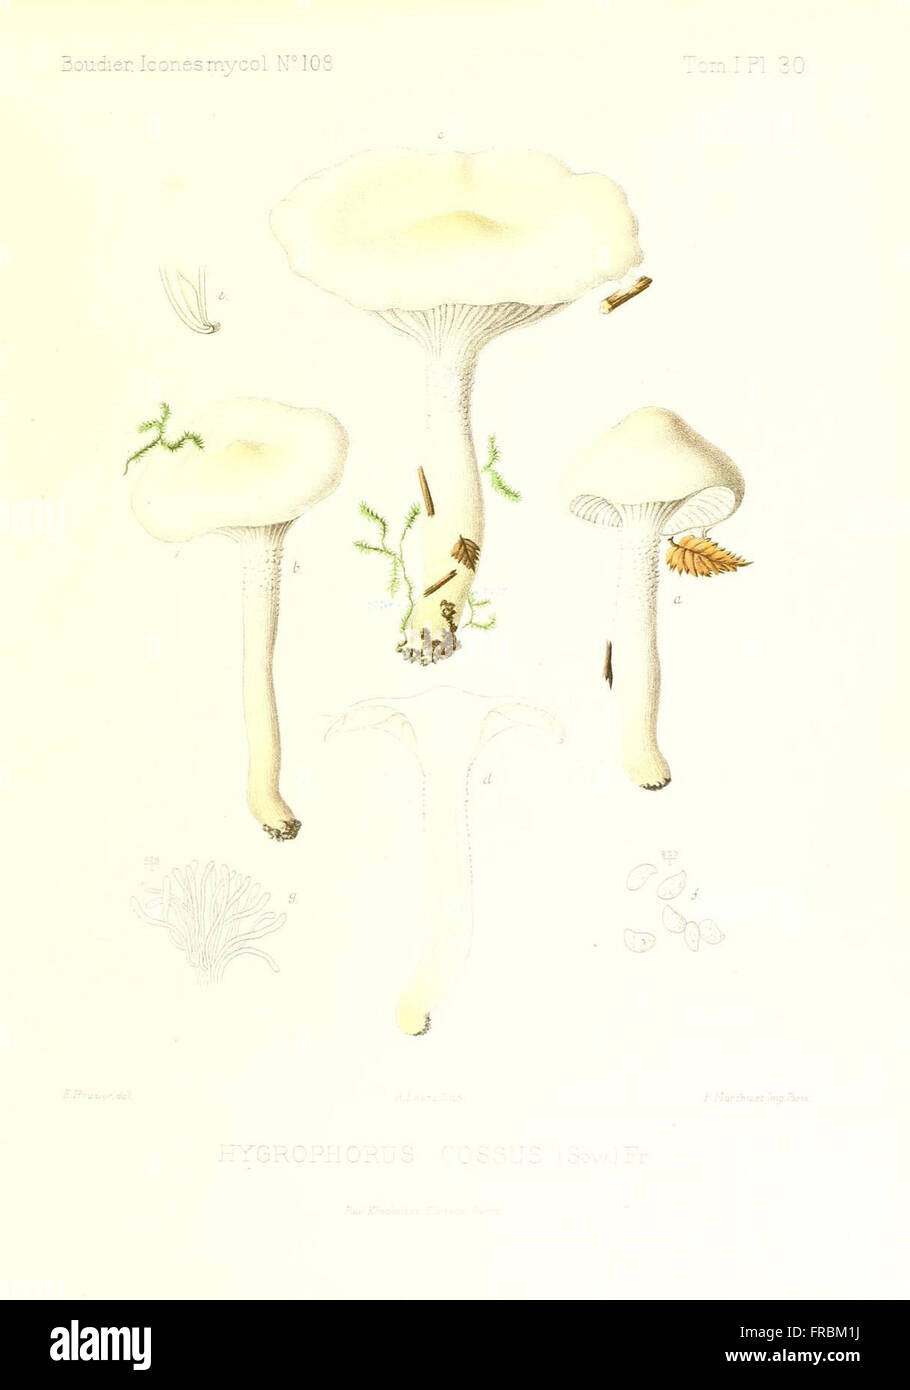 Icones mycologicC3A6, ou Iconographie des champignons de France principalement Discomycetes (Pl. 30) Stock Photo